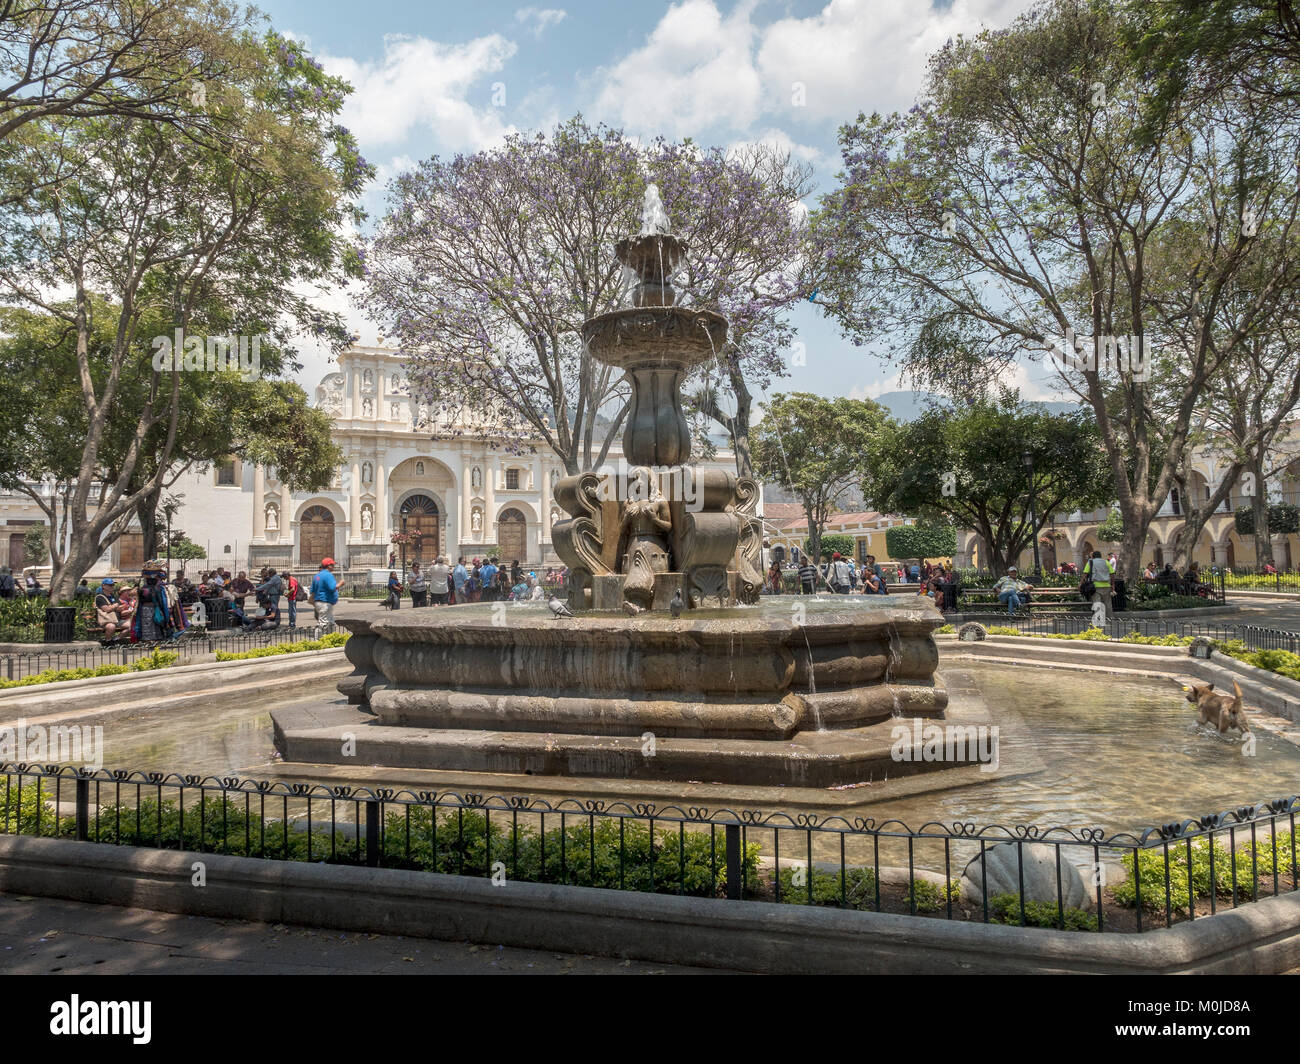 La sirène Fontaine dans Central Park (Plaza Mayor), construit par Diego de Porres en 1739 à La Antigua Guatemala, Guatemala Banque D'Images